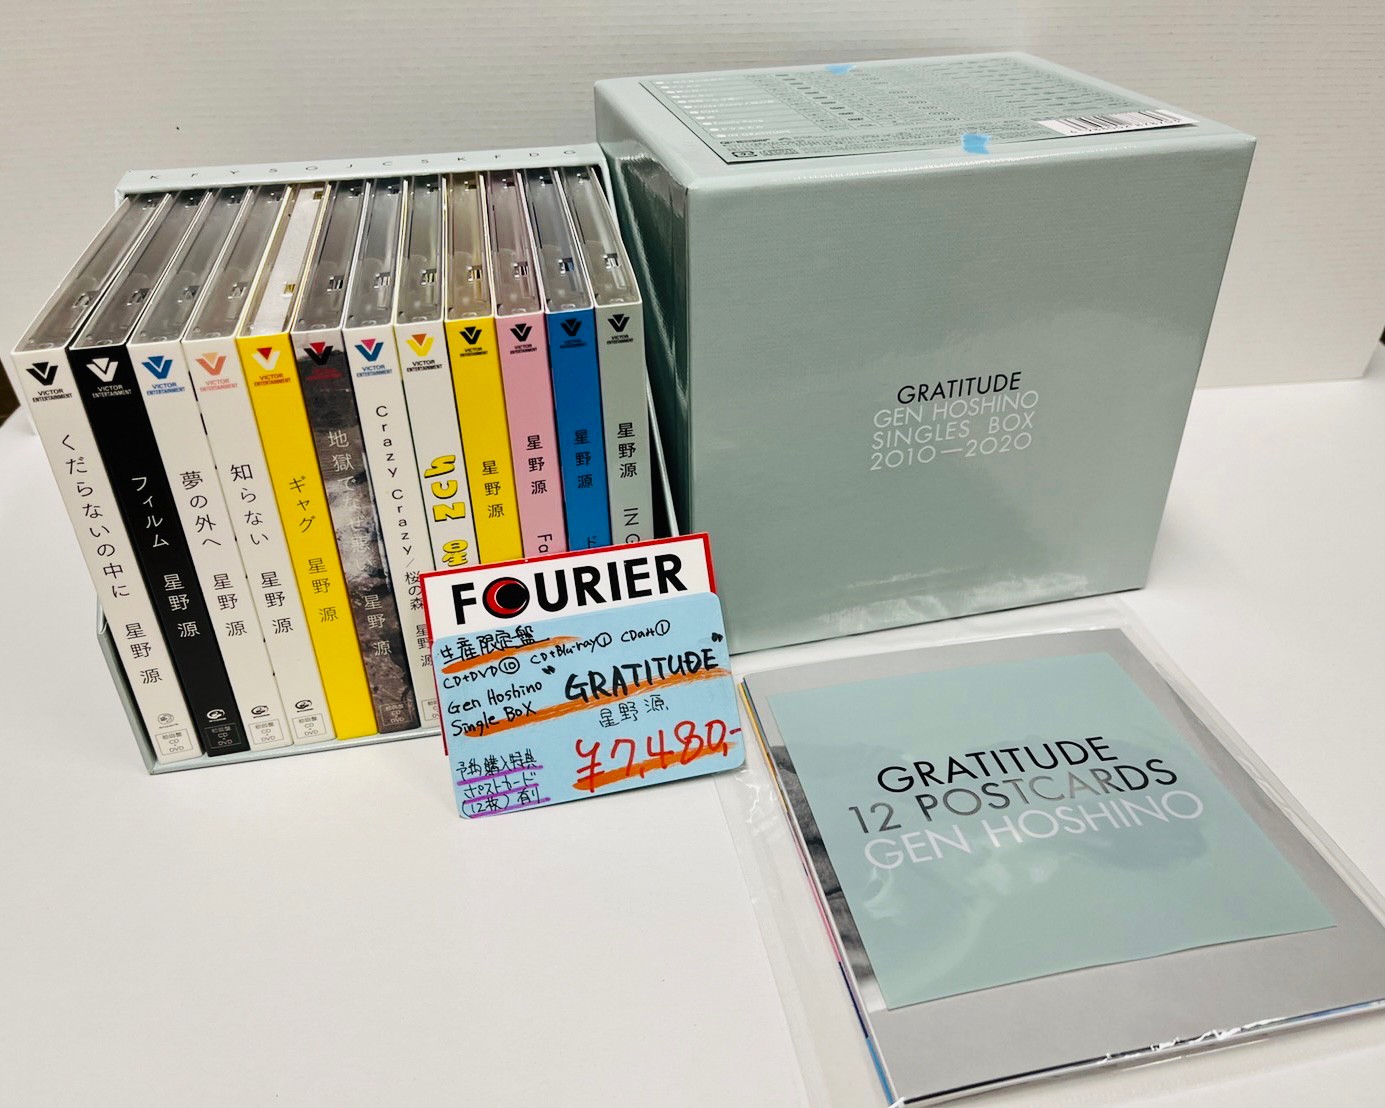 星野源 Gen Hoshino Single Box GRATITUDEカード付 - CD